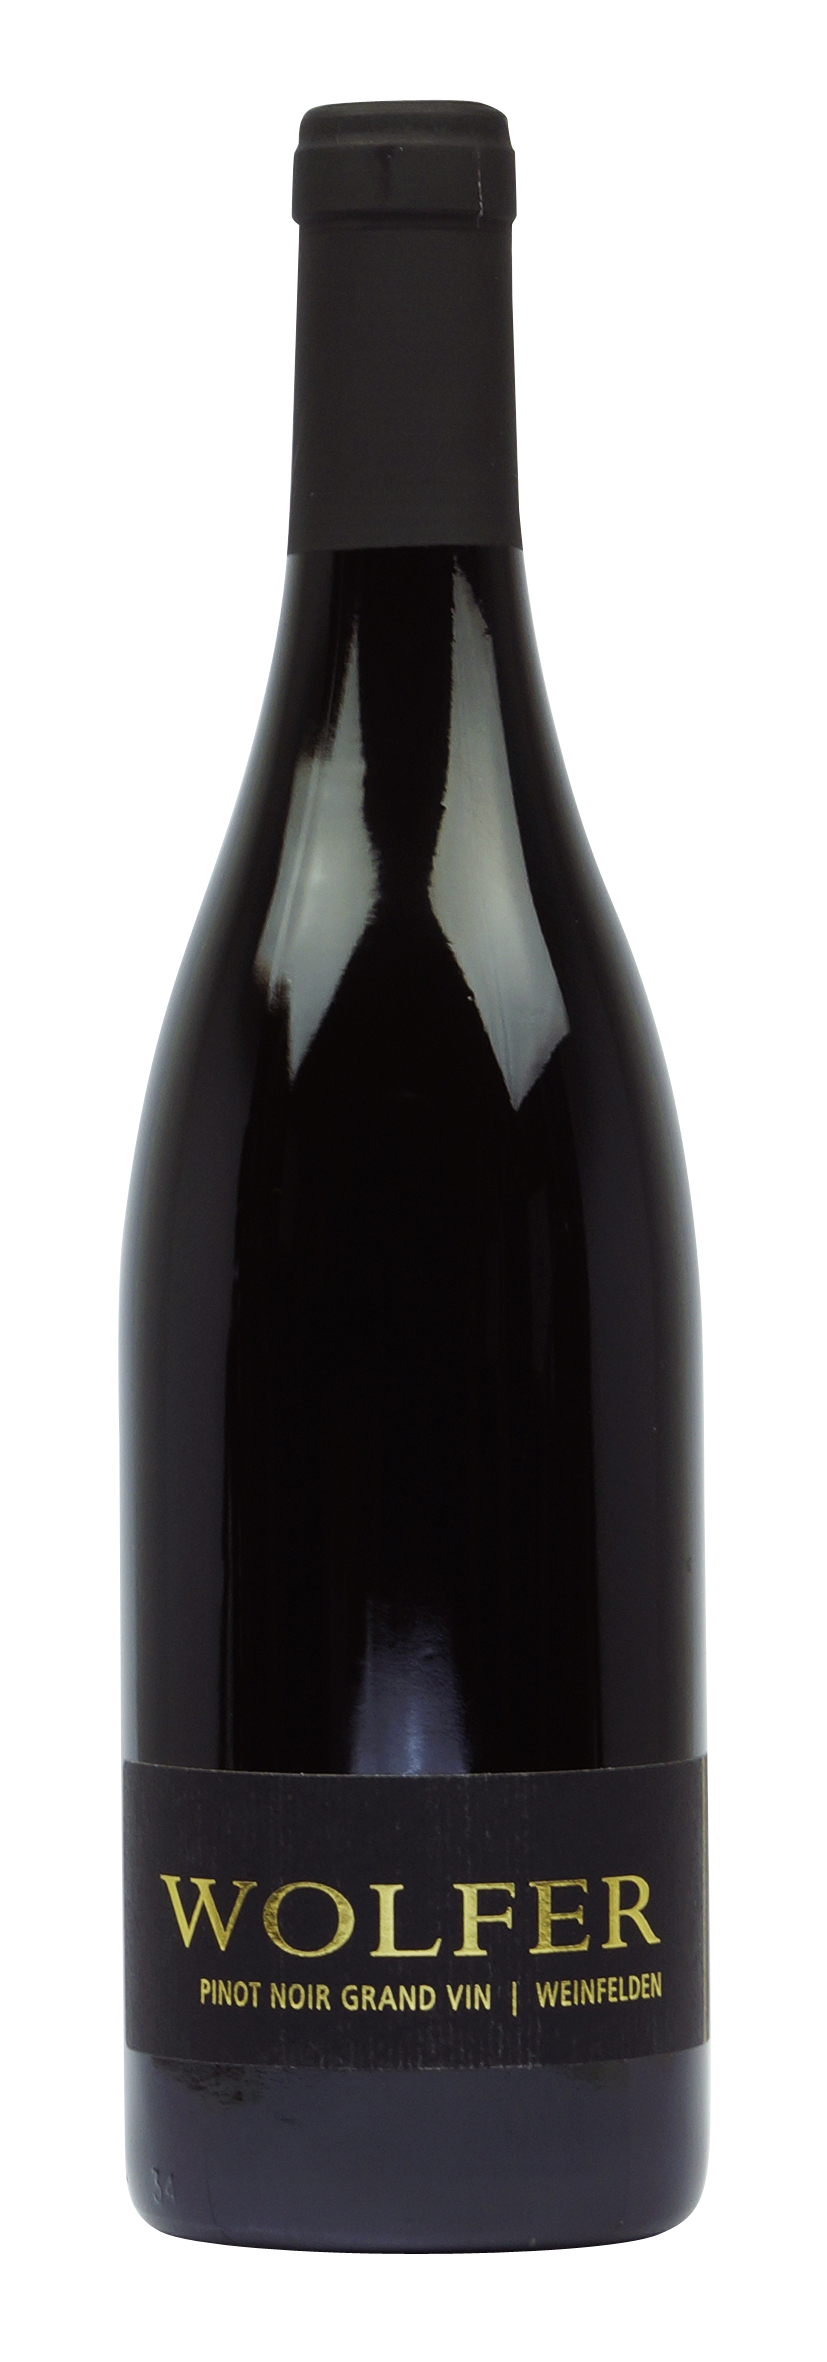 Thurgau AOC Weinfelden Pinot Noir Grand Vin 2016